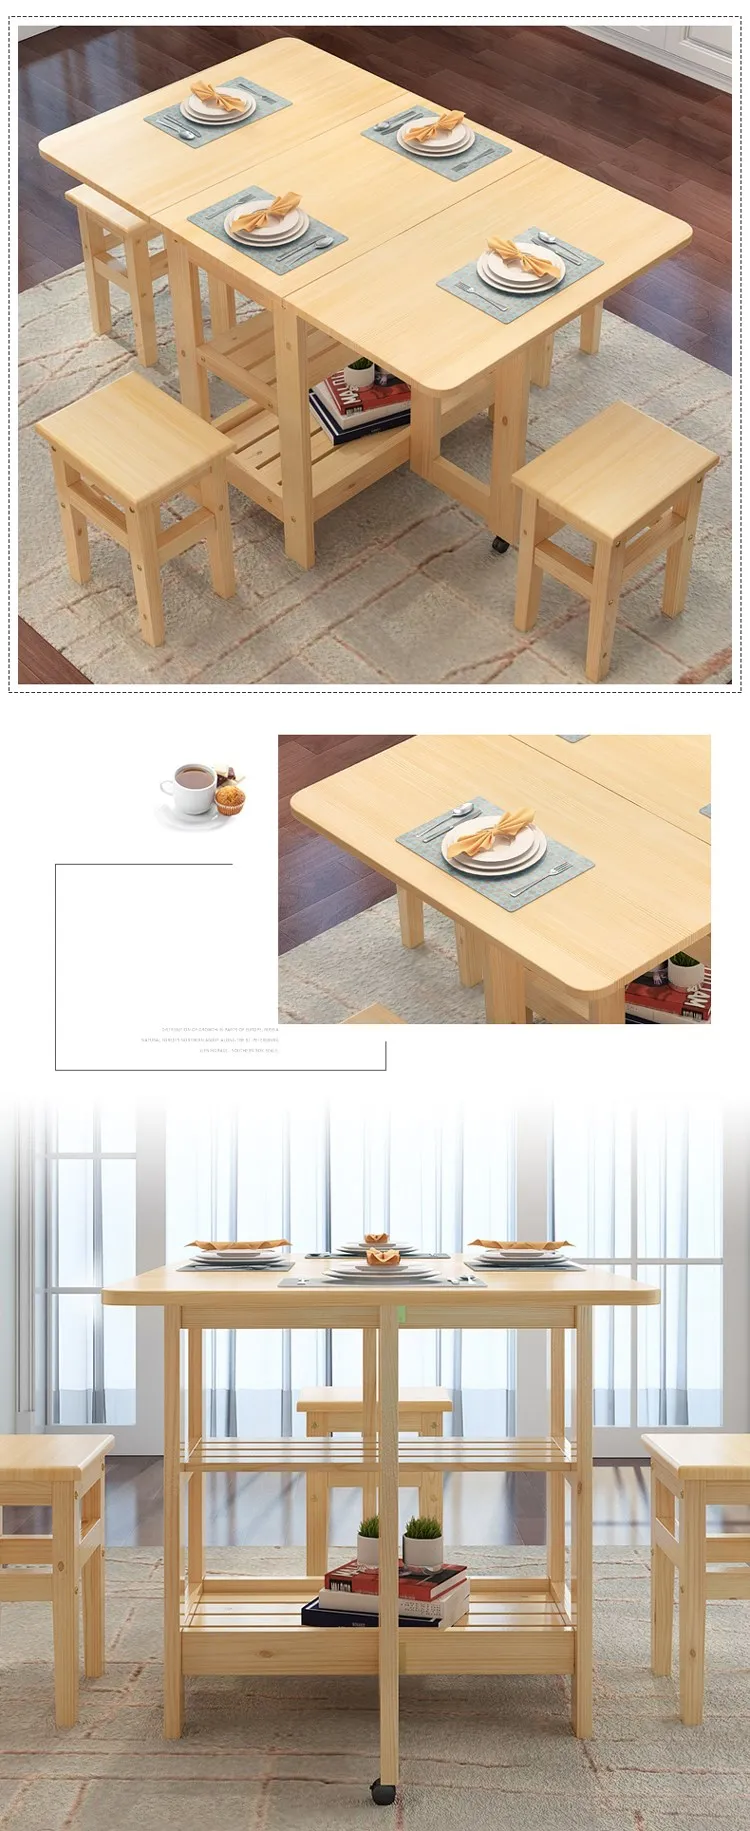 Высокое качество, твердый деревянный складной обеденный стол, набор, многофункциональный, Меса де комедор, Складывающийся стол, Esstisch